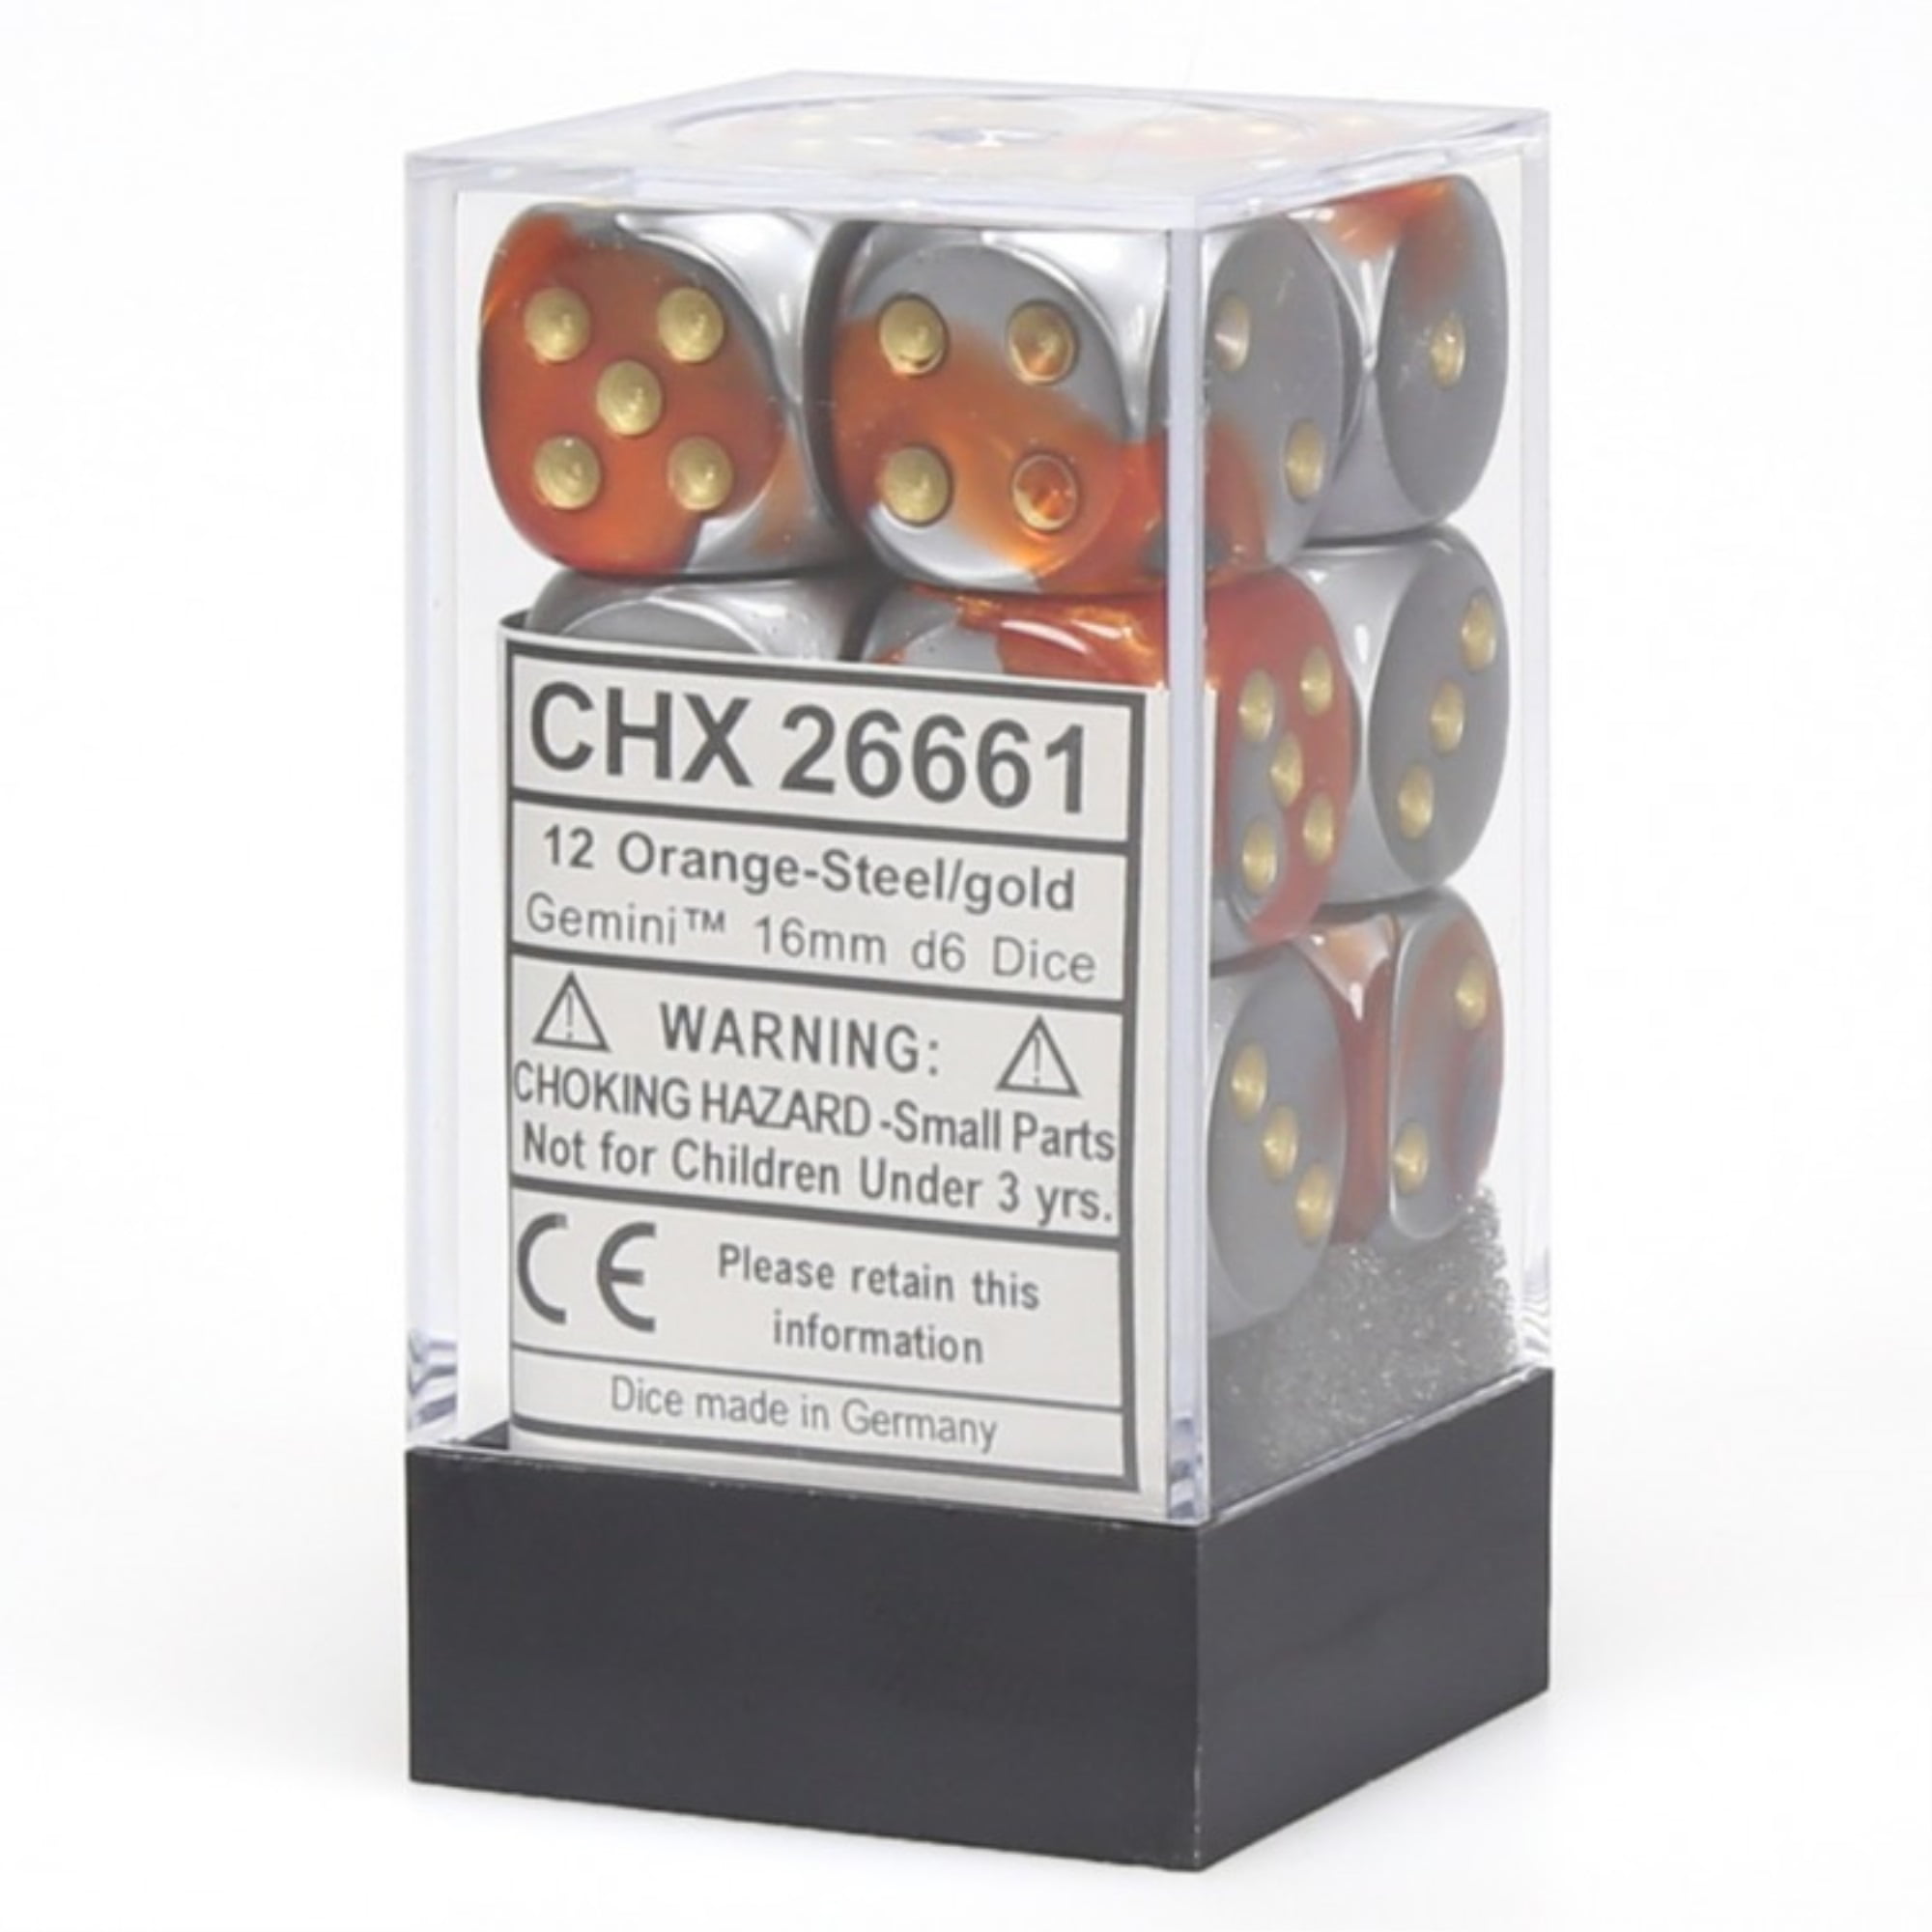 CHX26661 Chessex Manufacturing Gemini 7 12 16mm D6 Orange/Steel/Gold